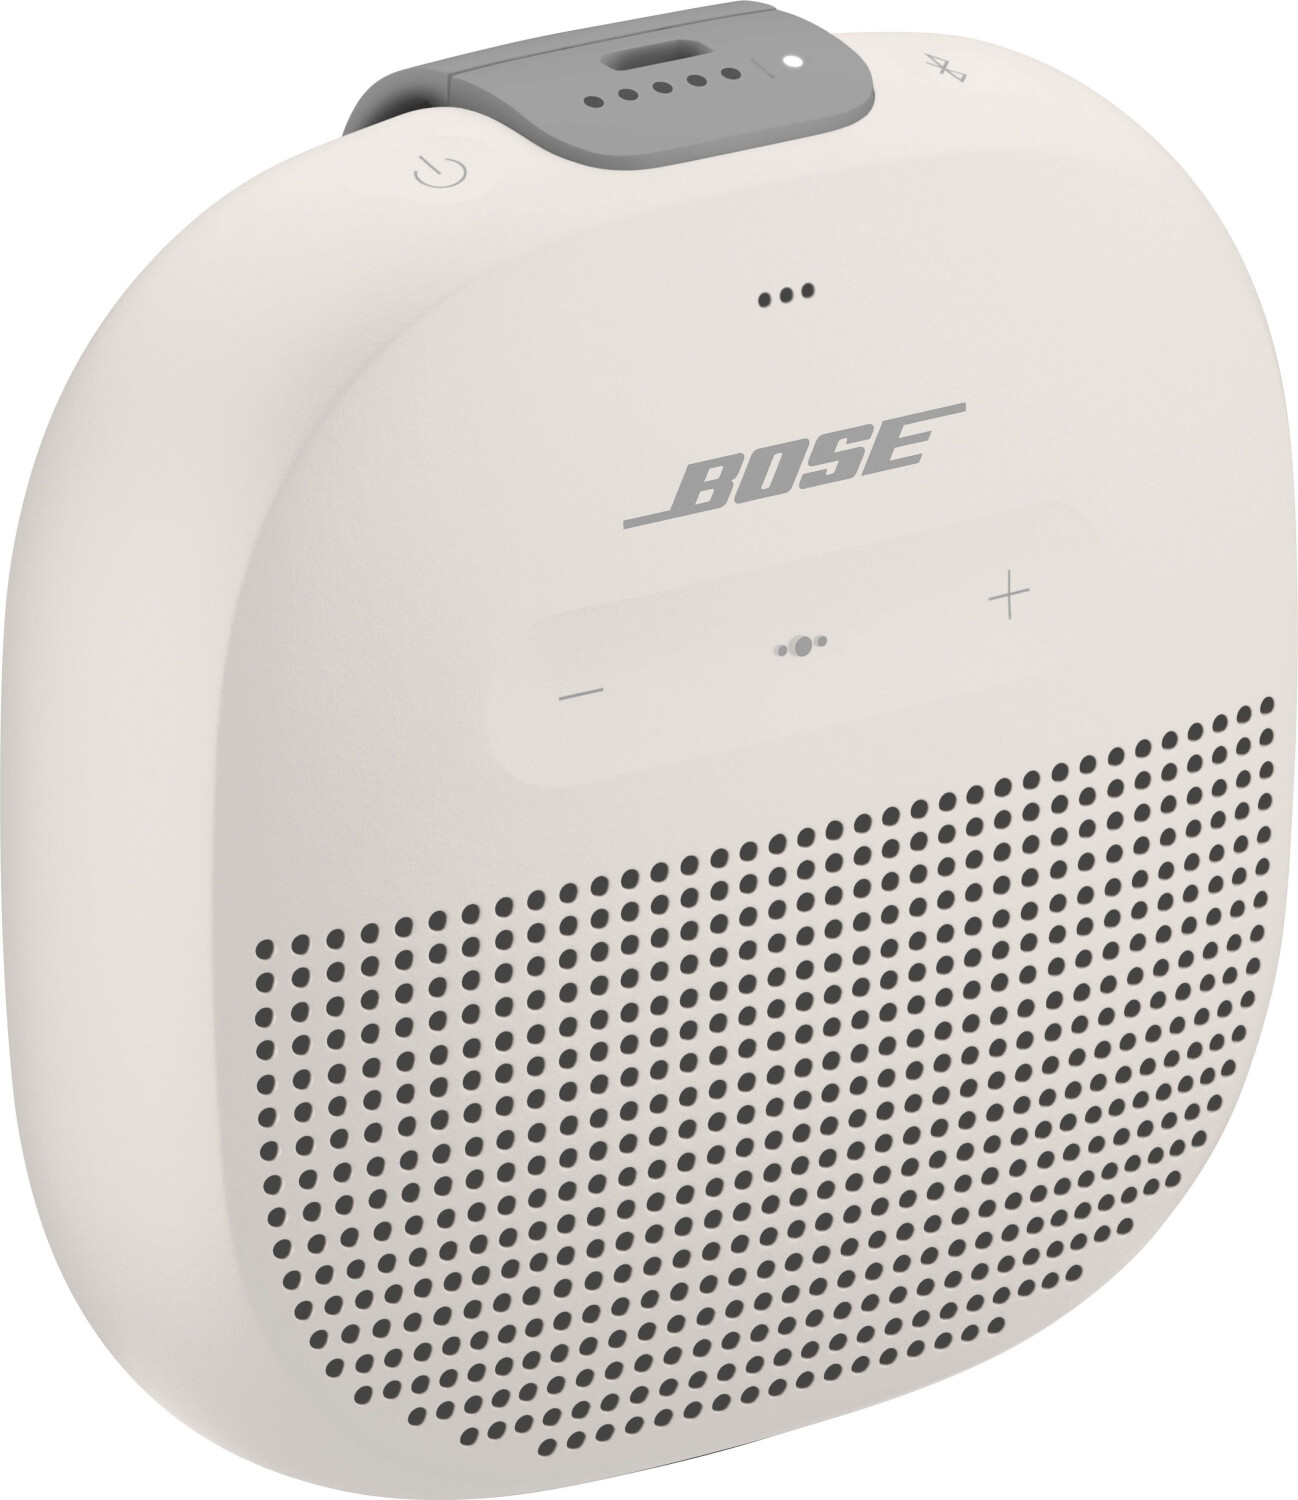 Preisvergleich bei Micro 89,95 € SoundLink ab Bose White |